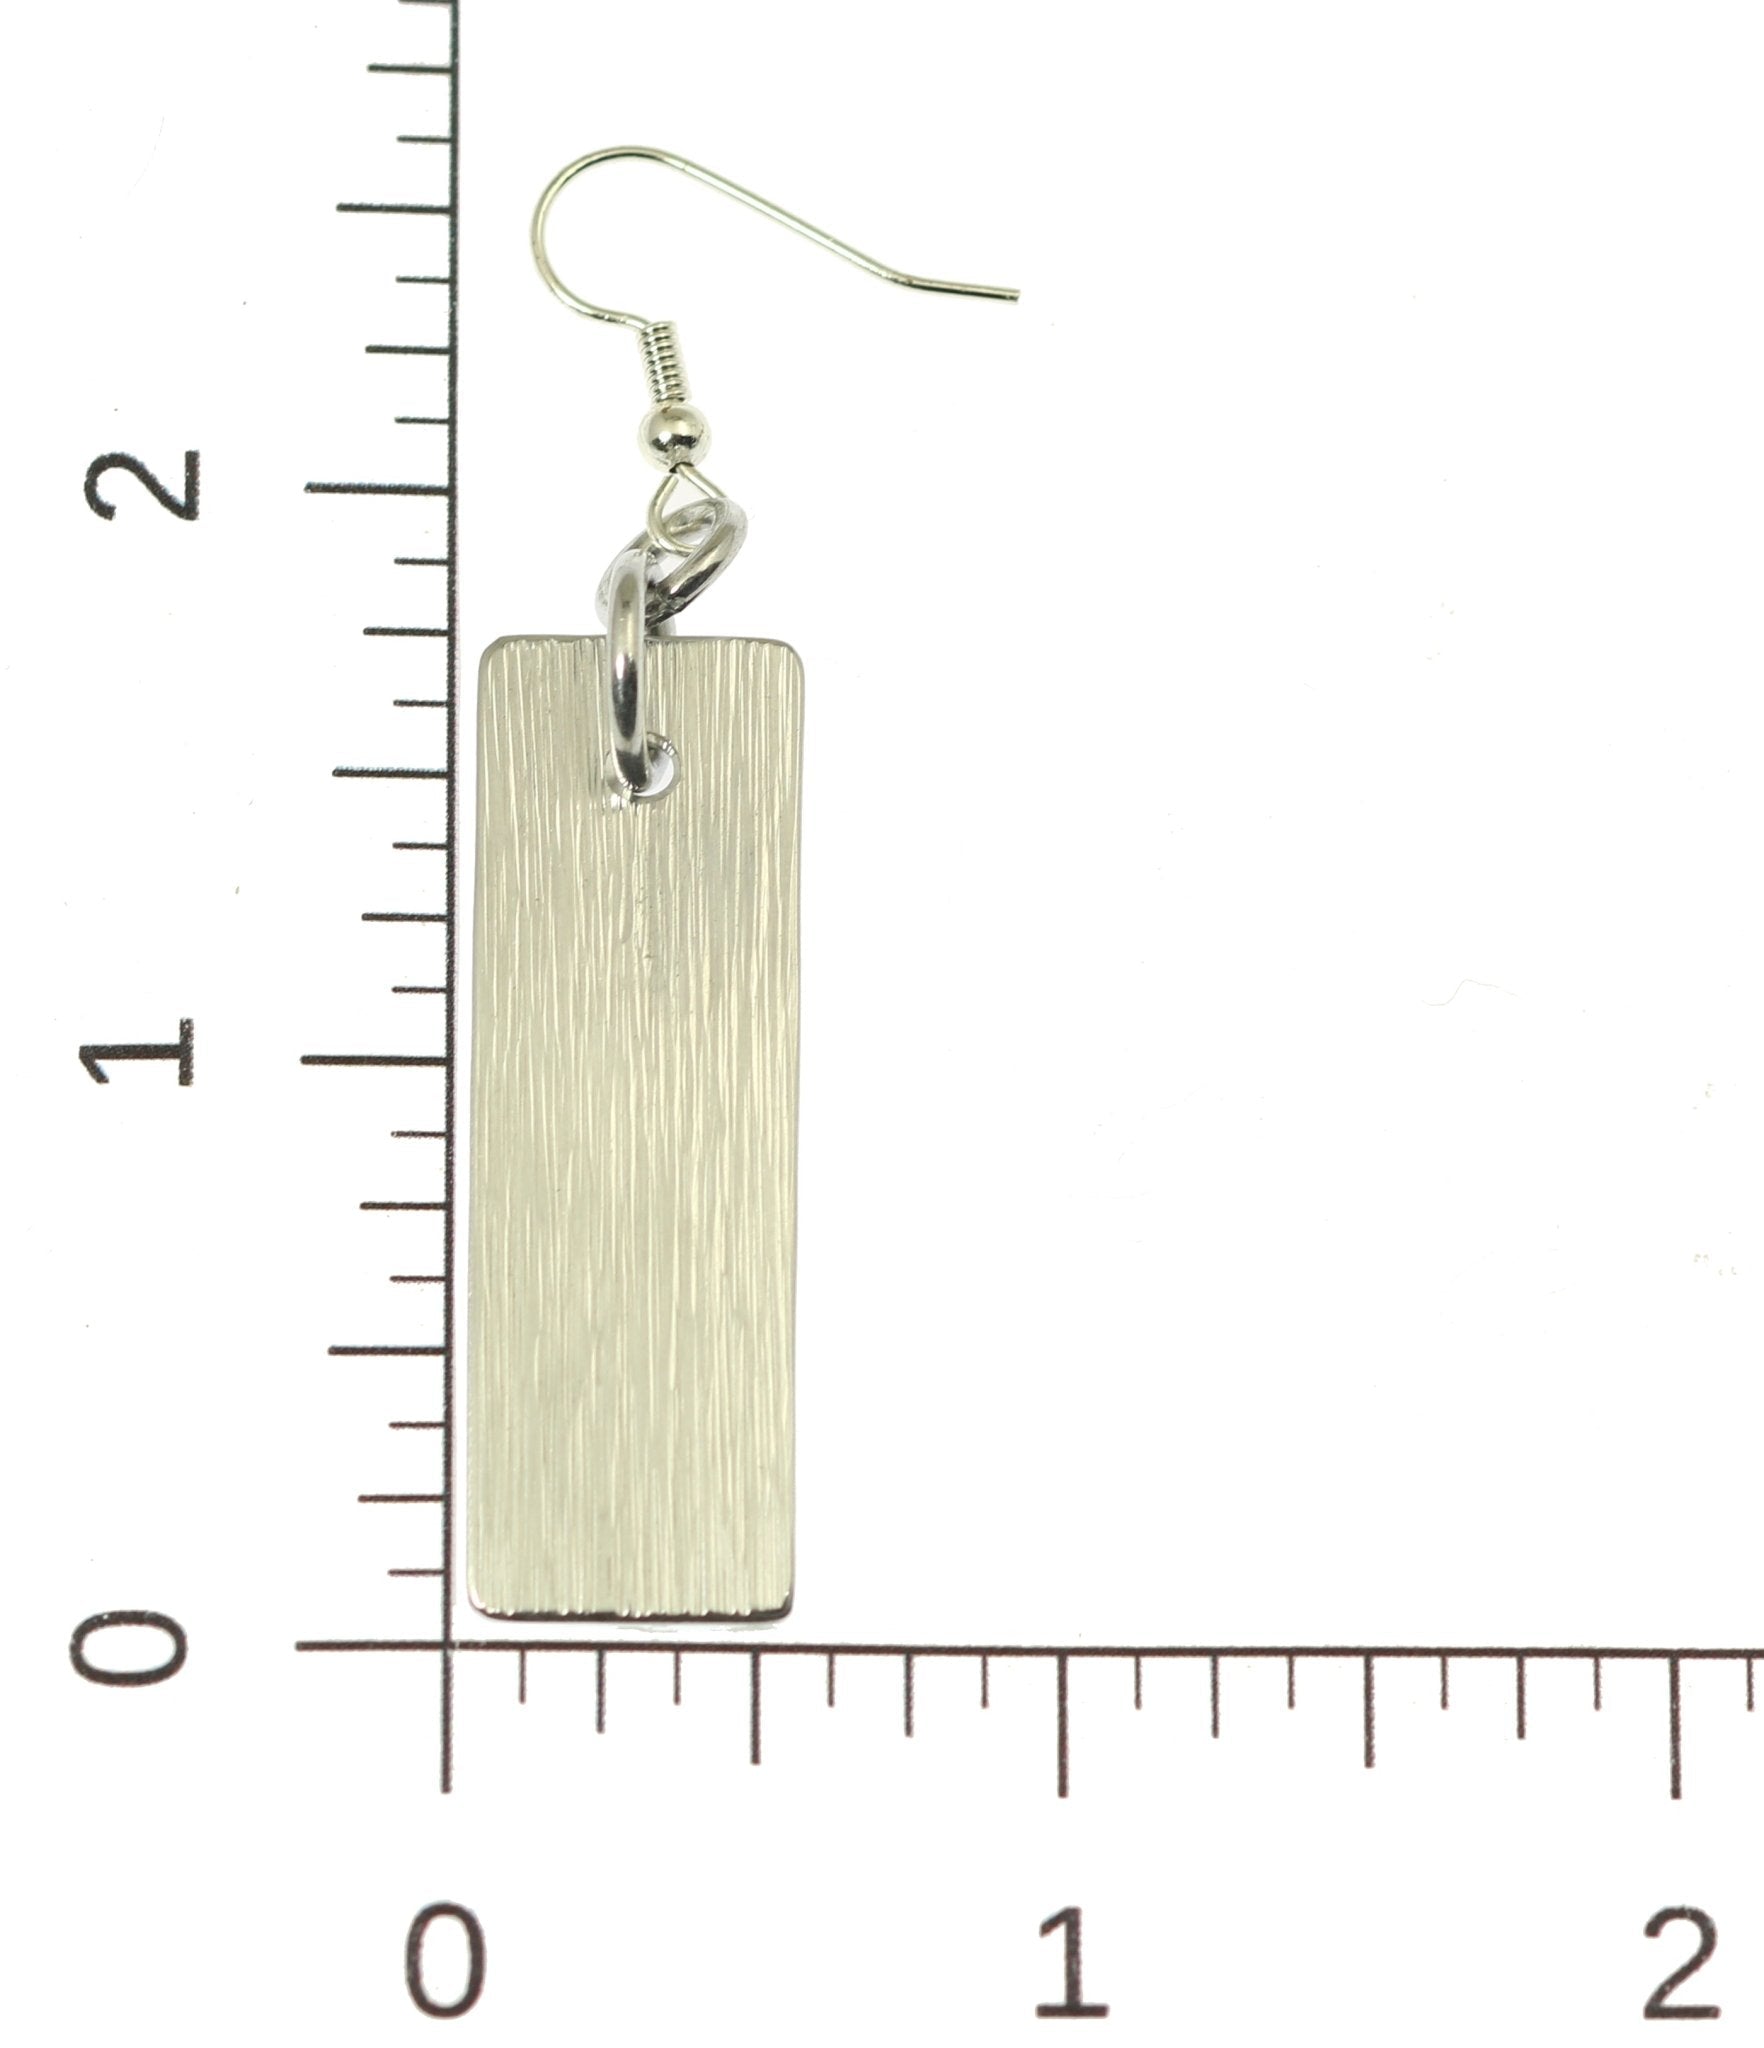 Aluminum Bark Dangle Earrings on Ruler for Scale